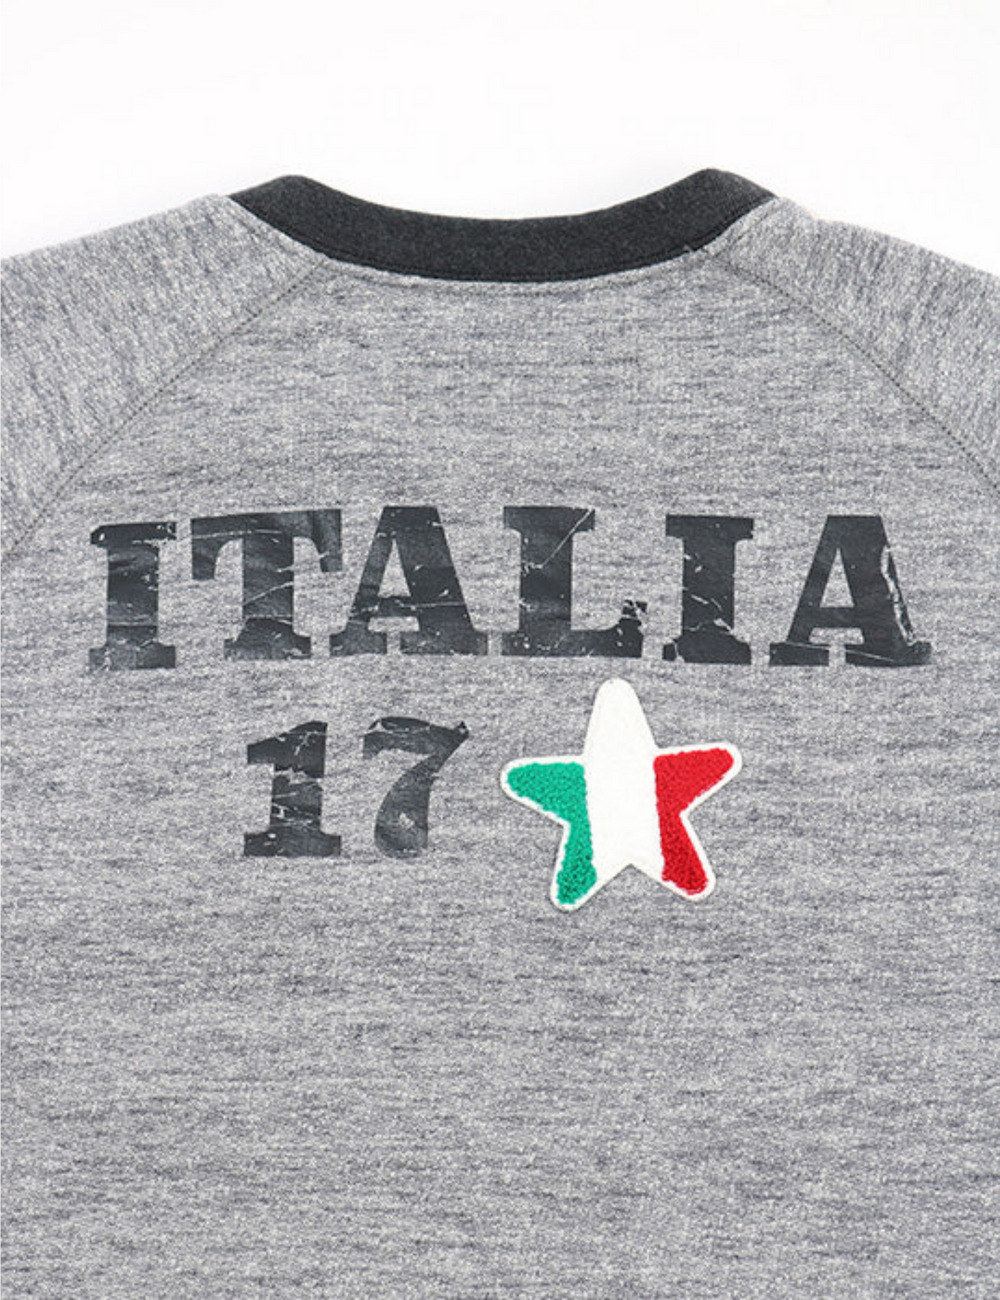 イタリア17 ブラックリブスウェットシャツ / ITALIA 17 BLK LIB SWEATSHIRT 詳細画像 ライトグレー 7